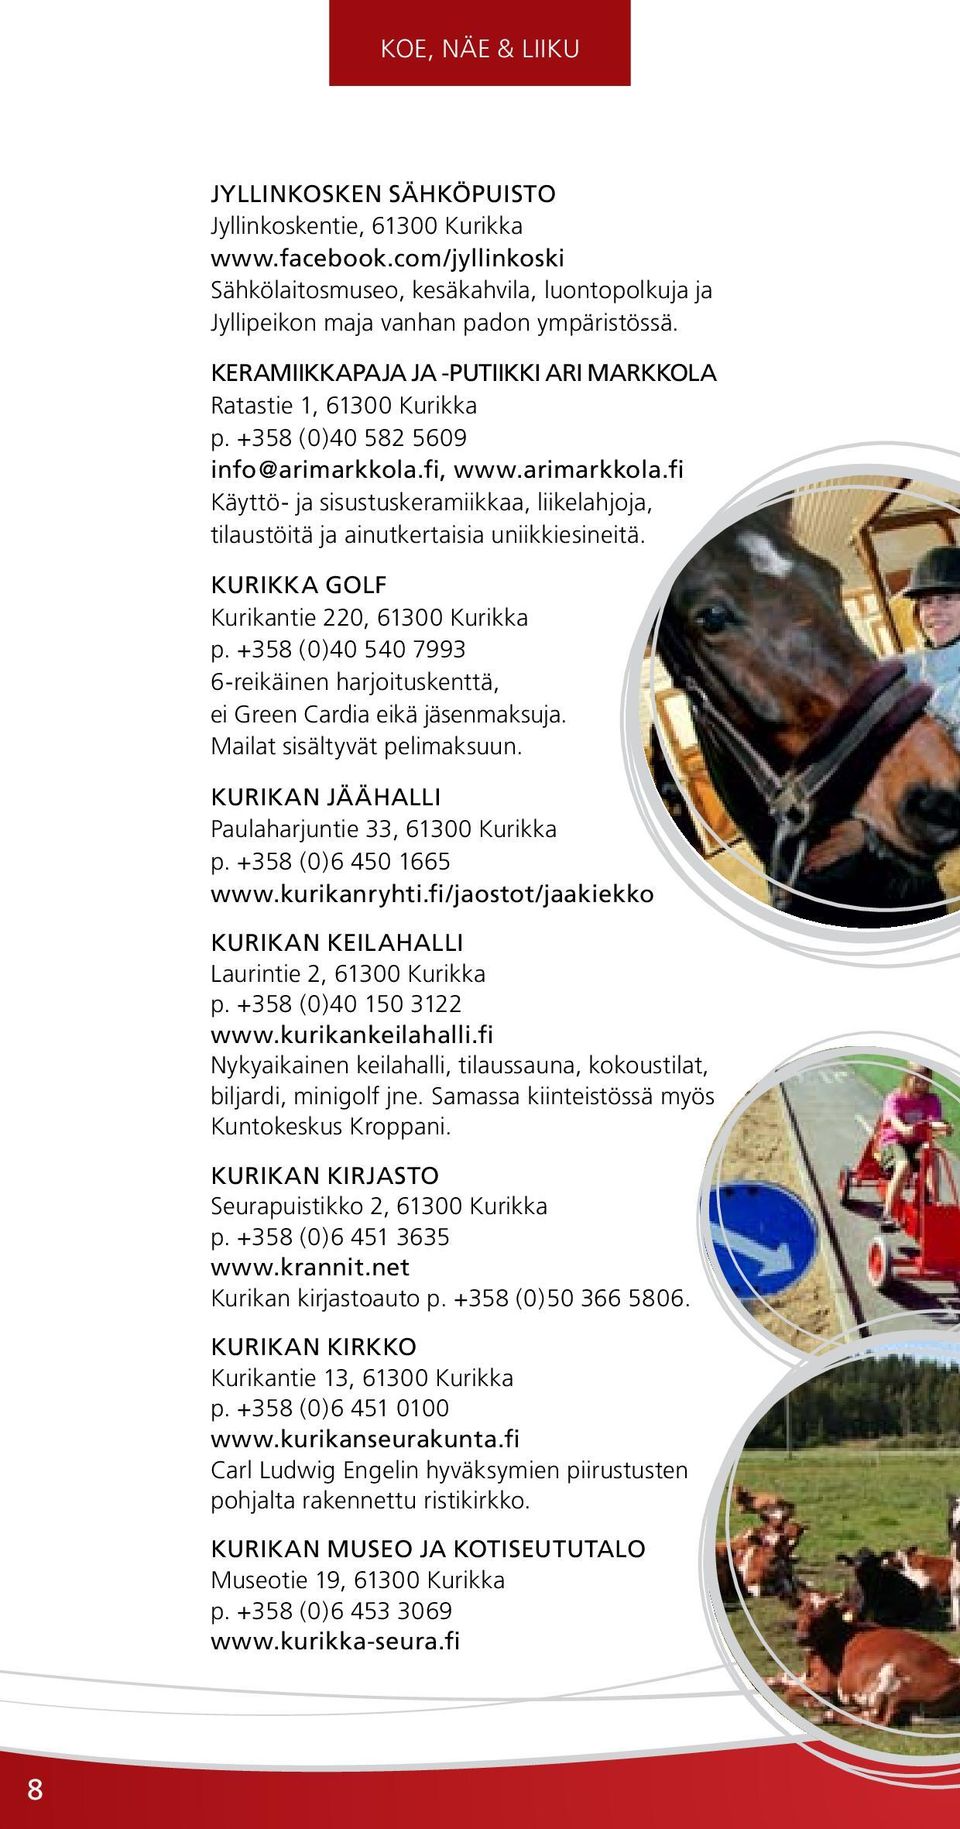 fi, www.arimarkkola.fi Käyttö- ja sisustuskeramiikkaa, liikelahjoja, tilaustöitä ja ainutkertaisia uniikkiesineitä. KURIKKA GOLF Kurikantie 220, 61300 Kurikka p.